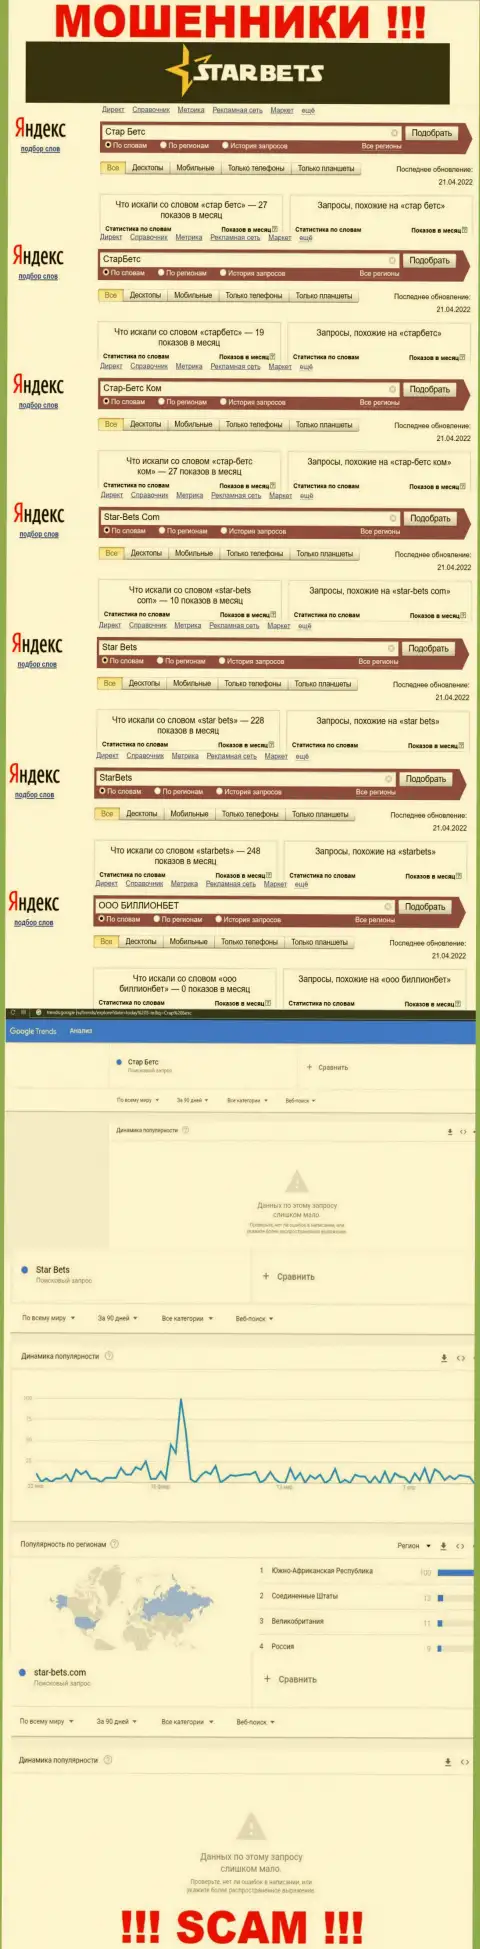 Скриншот результата online запросов по противозаконно действующей компании StarBets